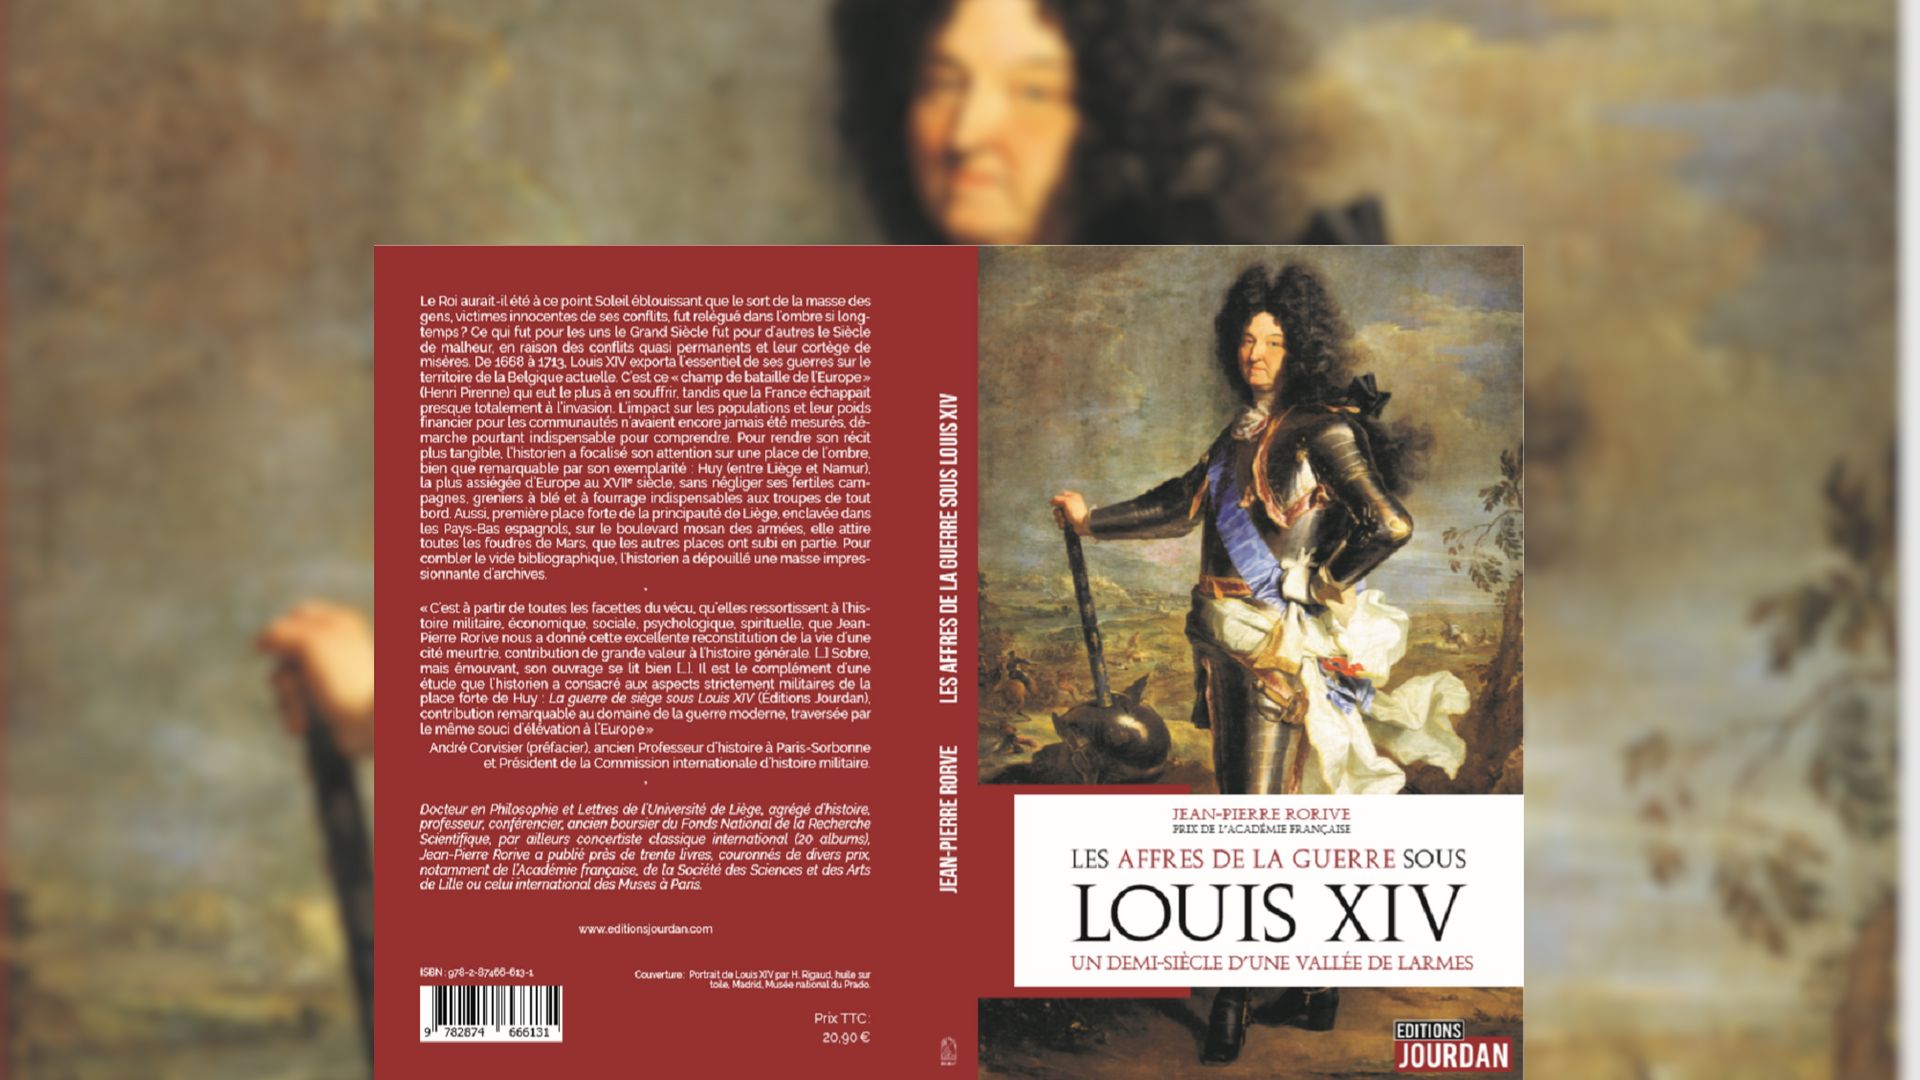 "Les affres de la guerre sous Louis XIV", le nouvel ouvrage de l'historien Jean-Pierre Rorive